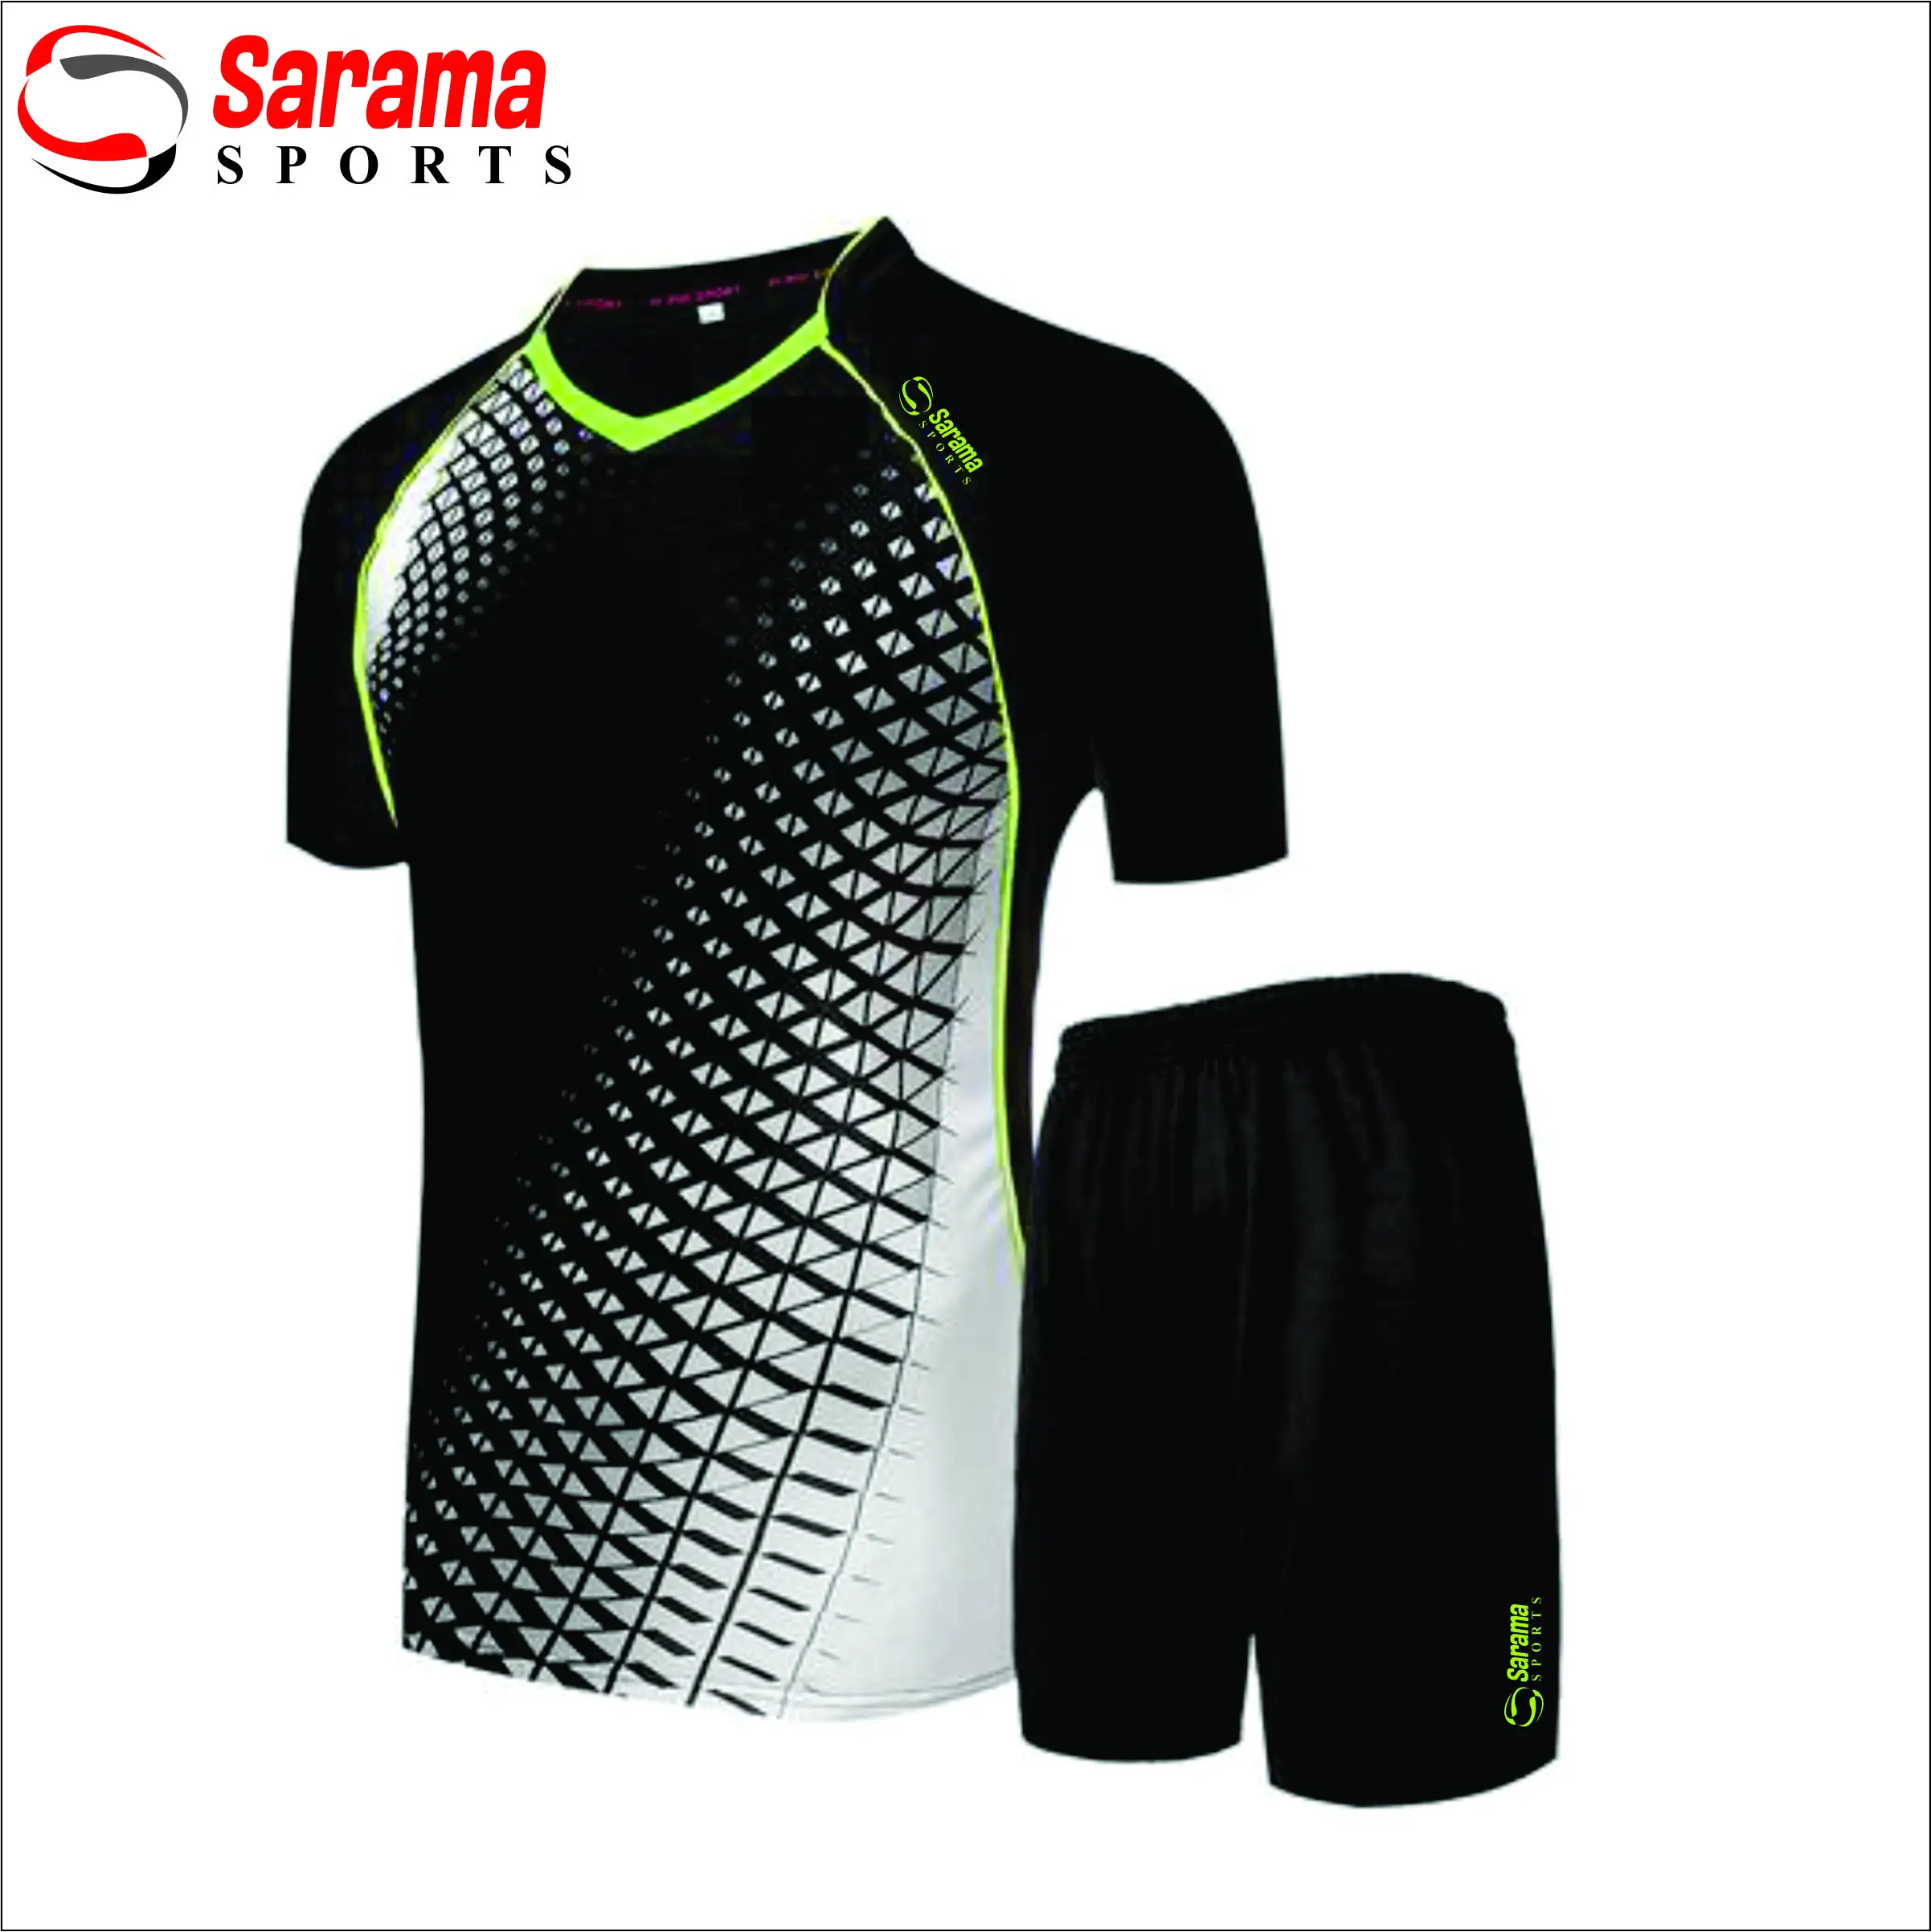 Униформа для футбола на заказ, высокое качество, оригинальная Униформа, Спорт, Международный футбольный клуб